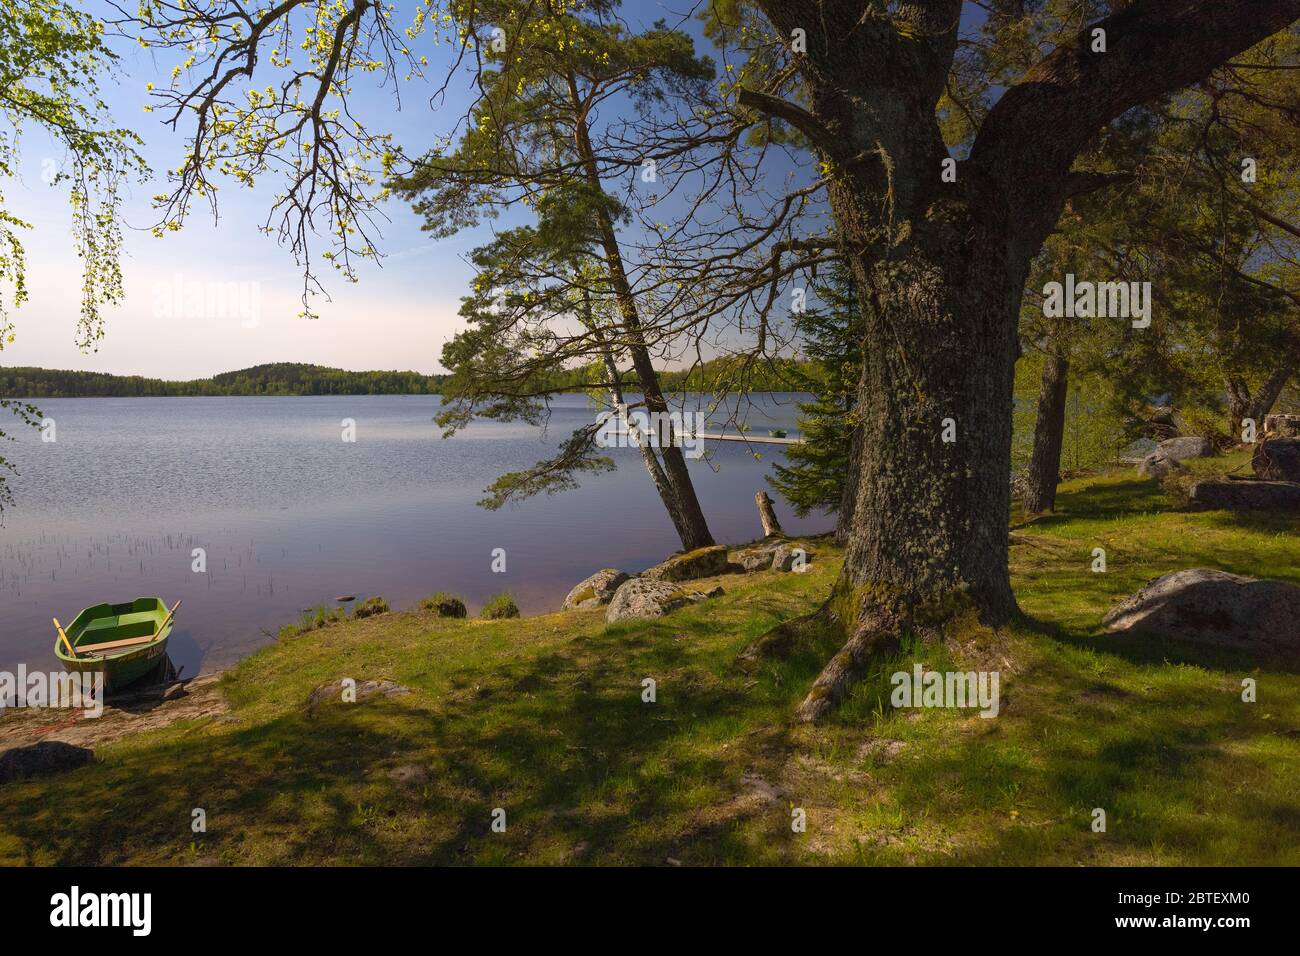 Passeggia lungo il lago tra gli alberi in una soleggiata giornata di primavera. Barche con remi ormeggiati alla riva. Grandi pietre ricoperte di muschio giacciono sull'erba verde. La Foto Stock